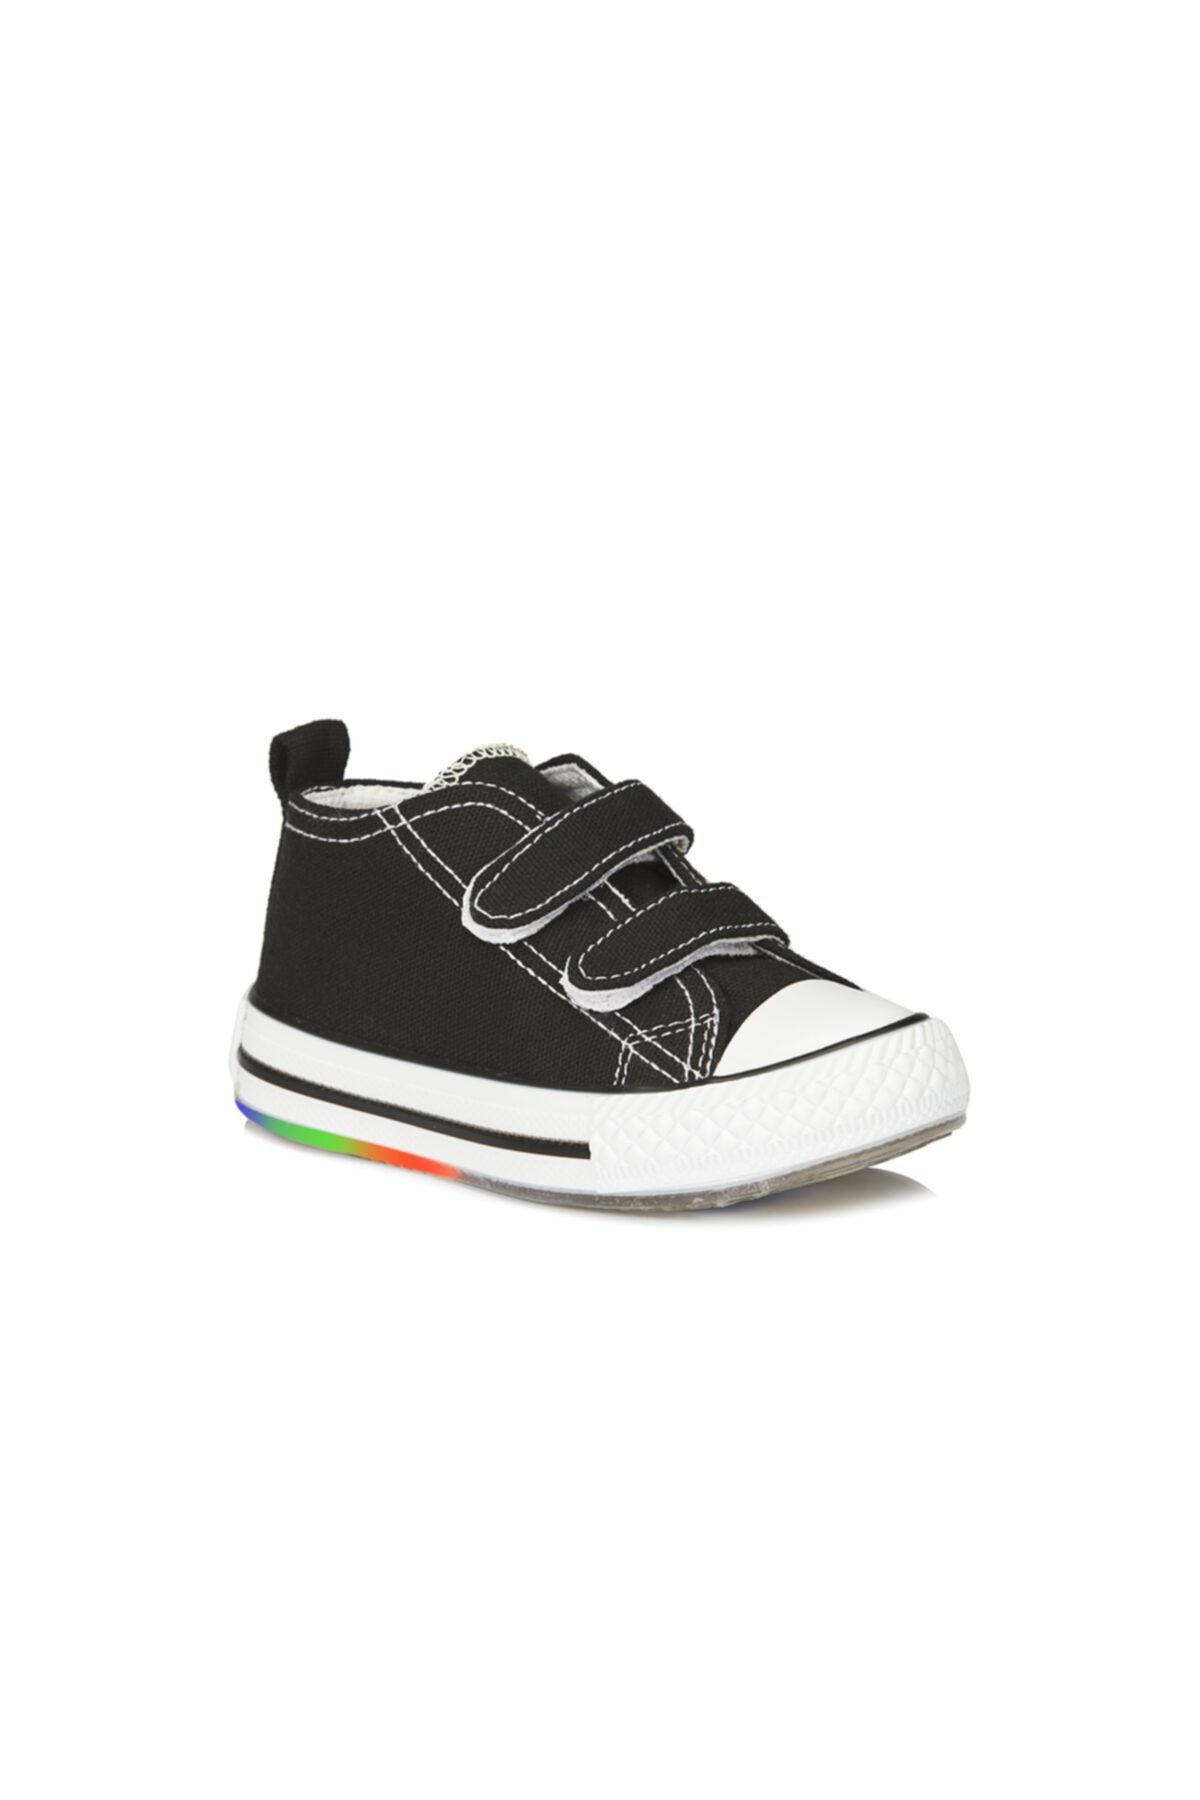 Vicco Pino Işıklı Unisex Çocuk Siyah/beyaz Spor Ayakkabı